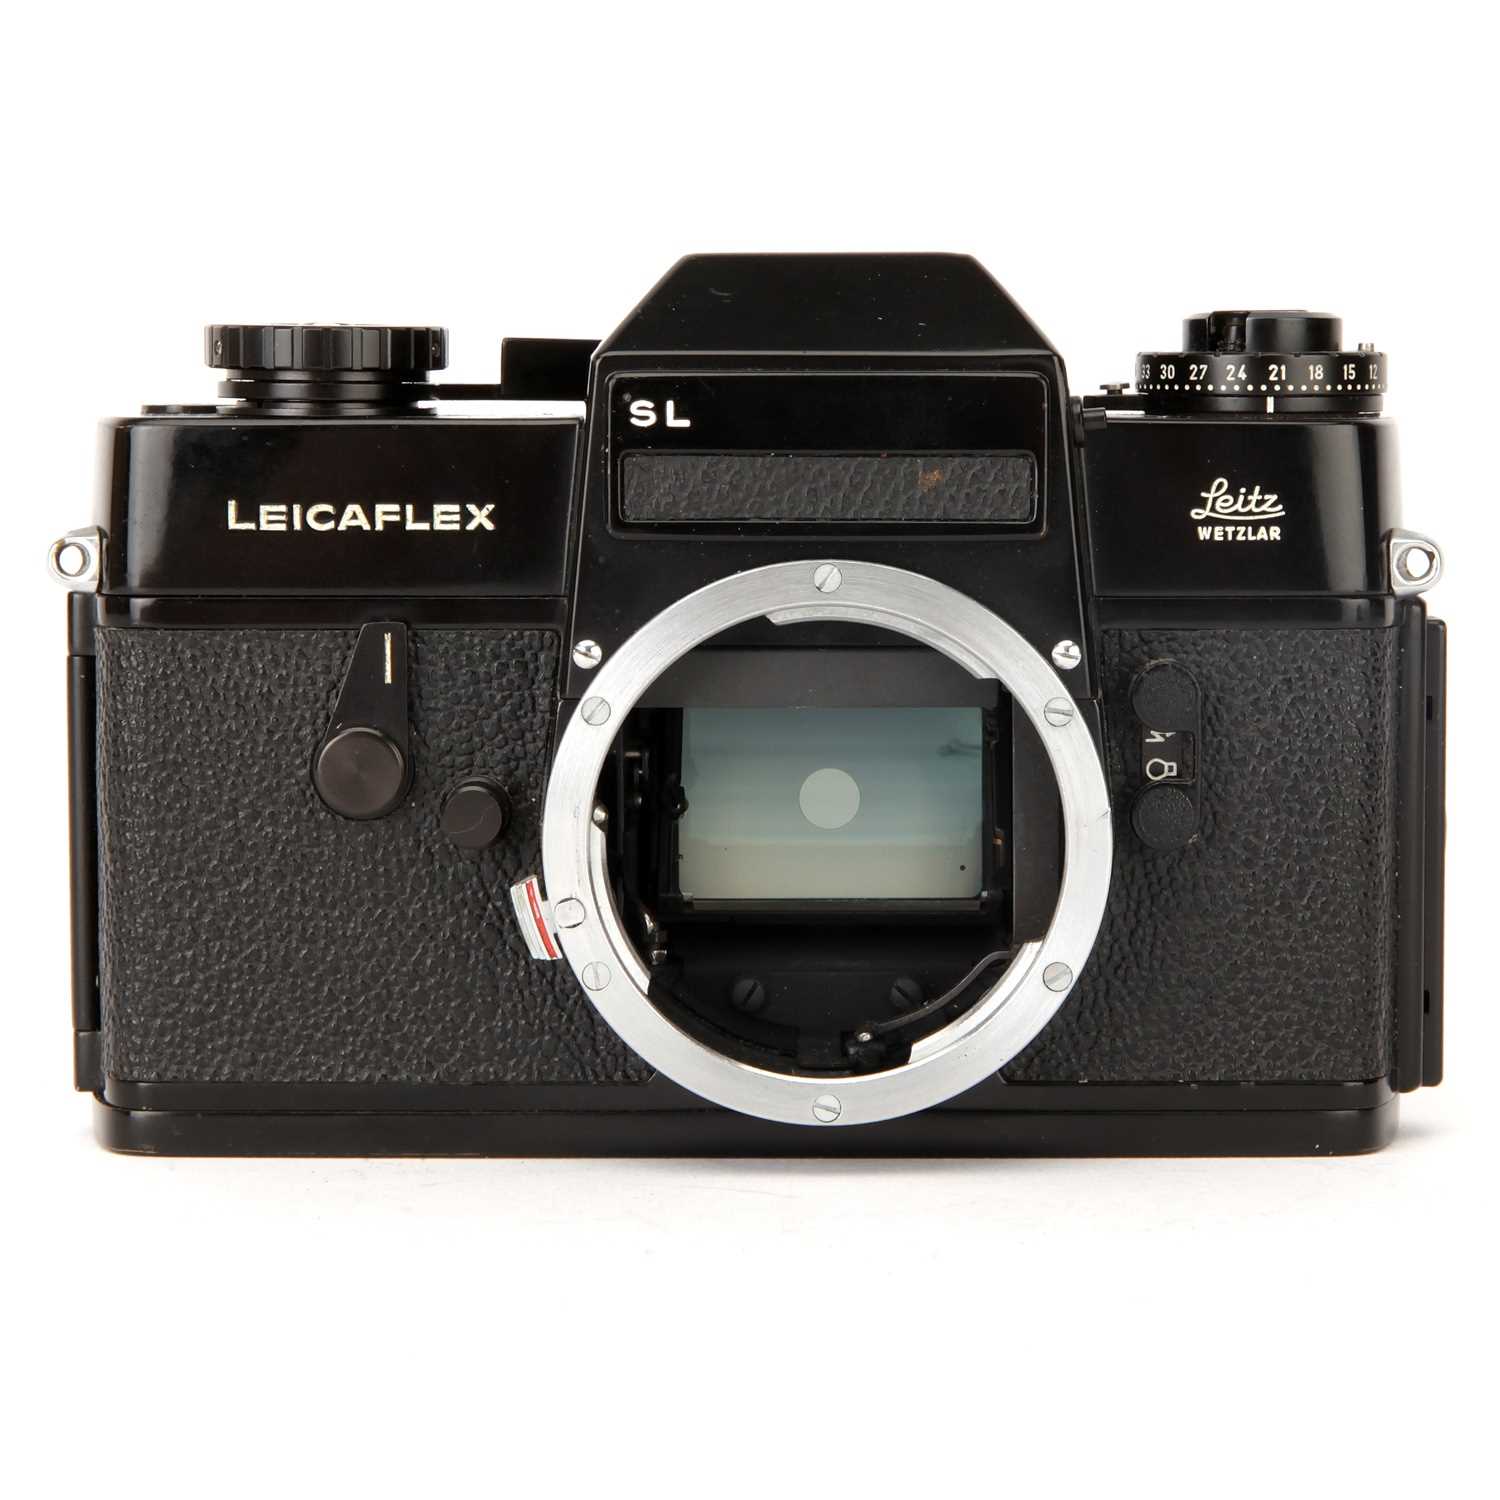 Lot 42 - A Leica Leicaflex SL SLR Body